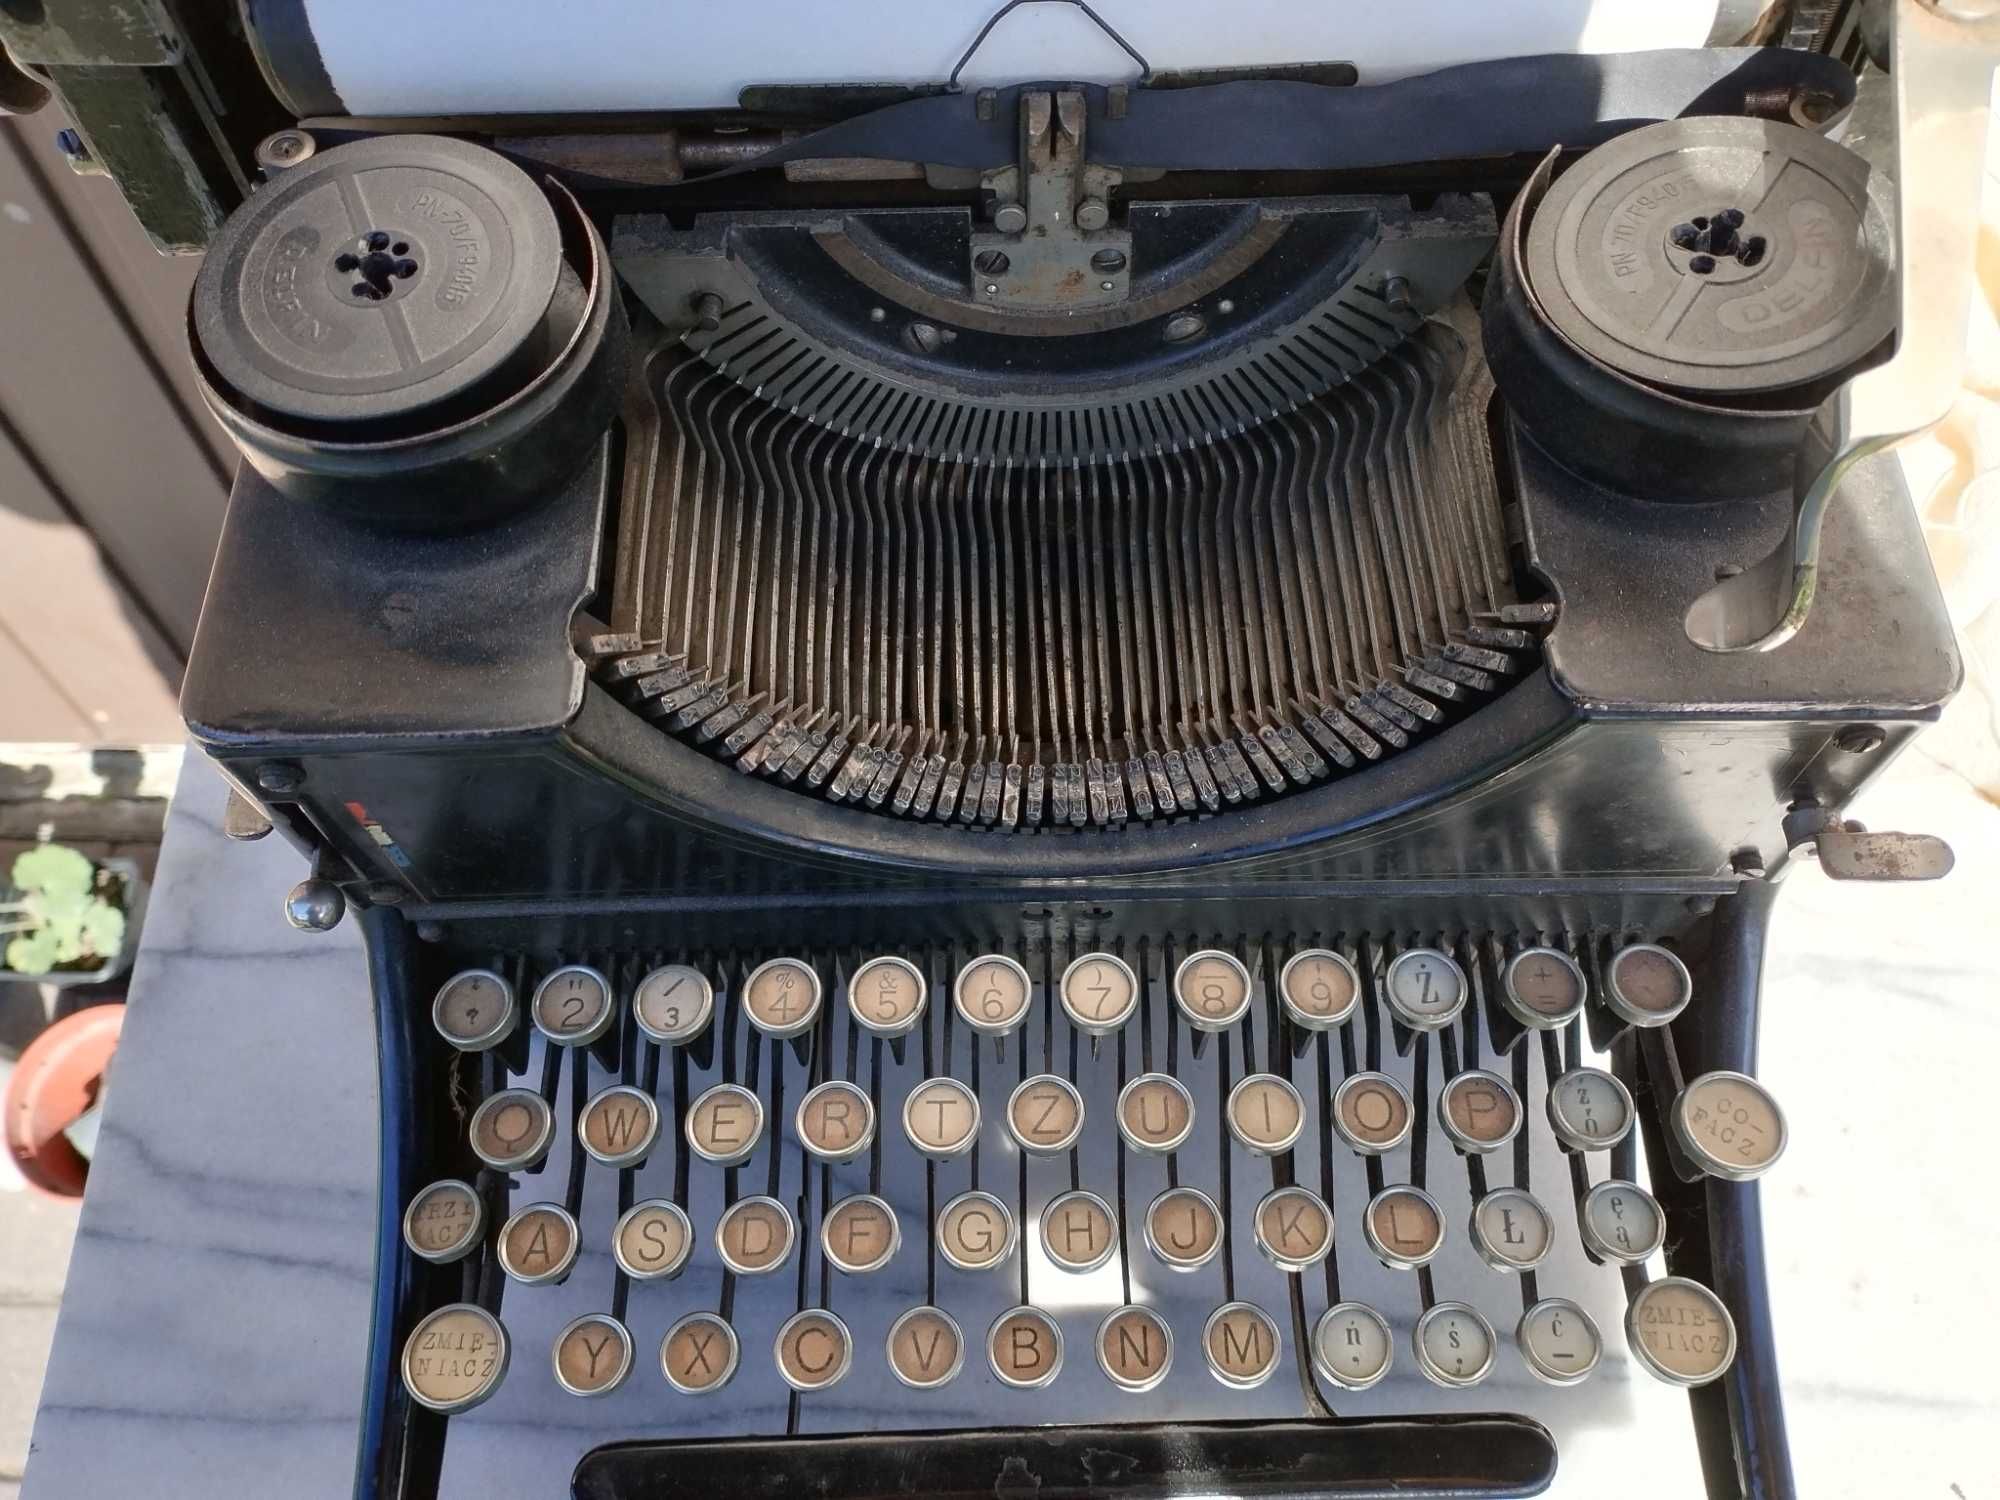 Orga Bing Werke maszyna do pisania